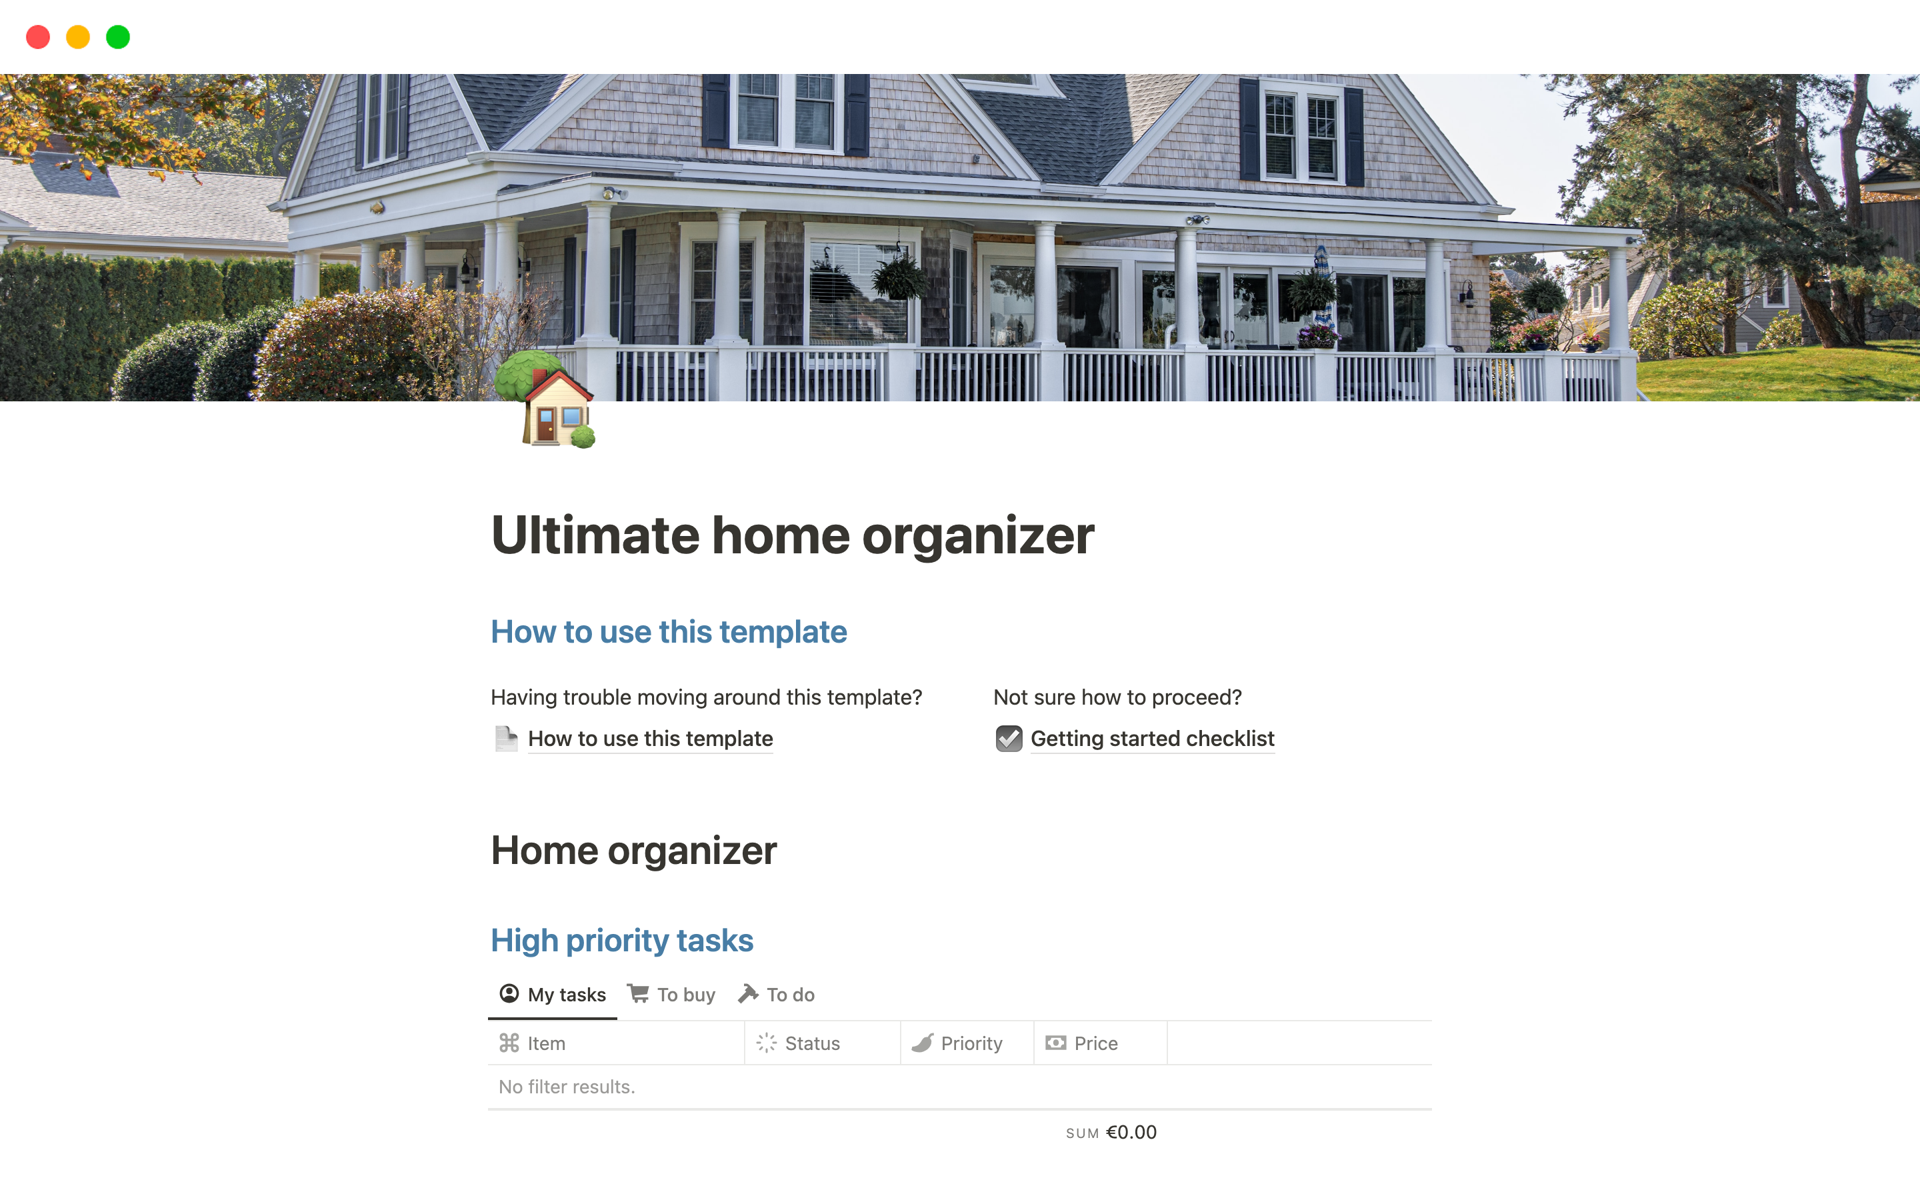 En förhandsgranskning av mallen för Ultimate home organizer